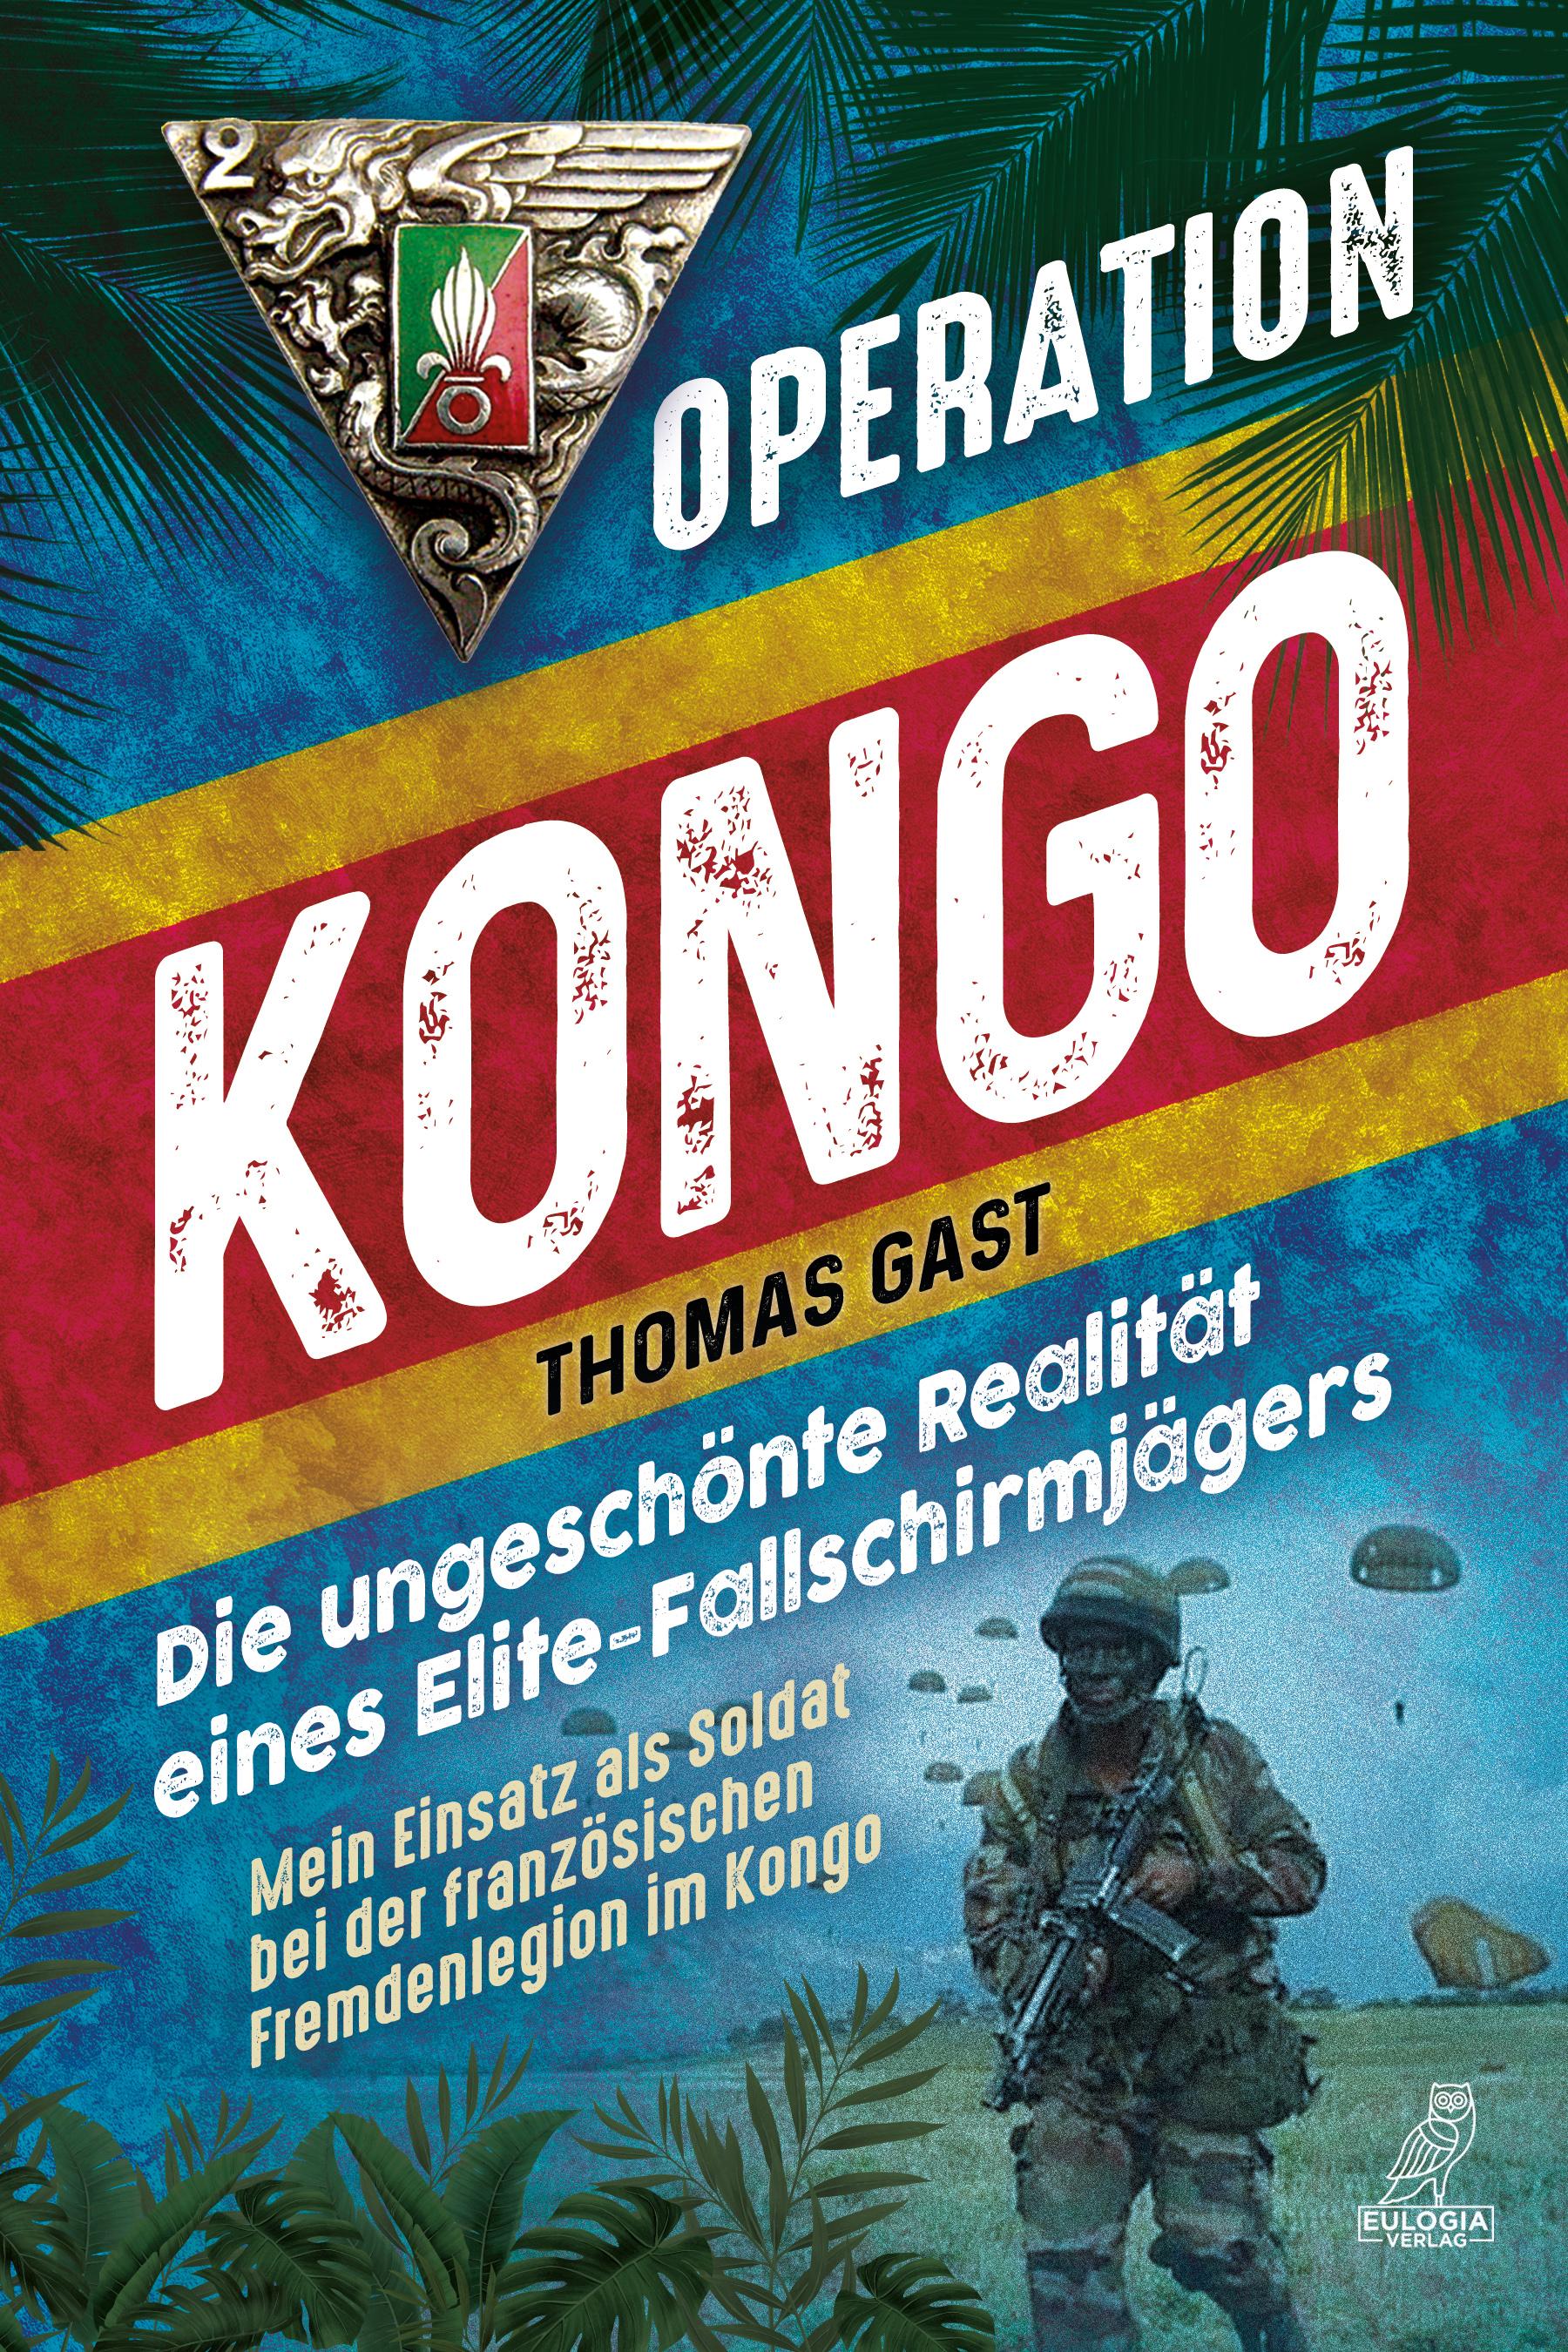 Operation Kongo - Mein Einsatz als Soldat bei der französischen Fremdenlegion im Kongo